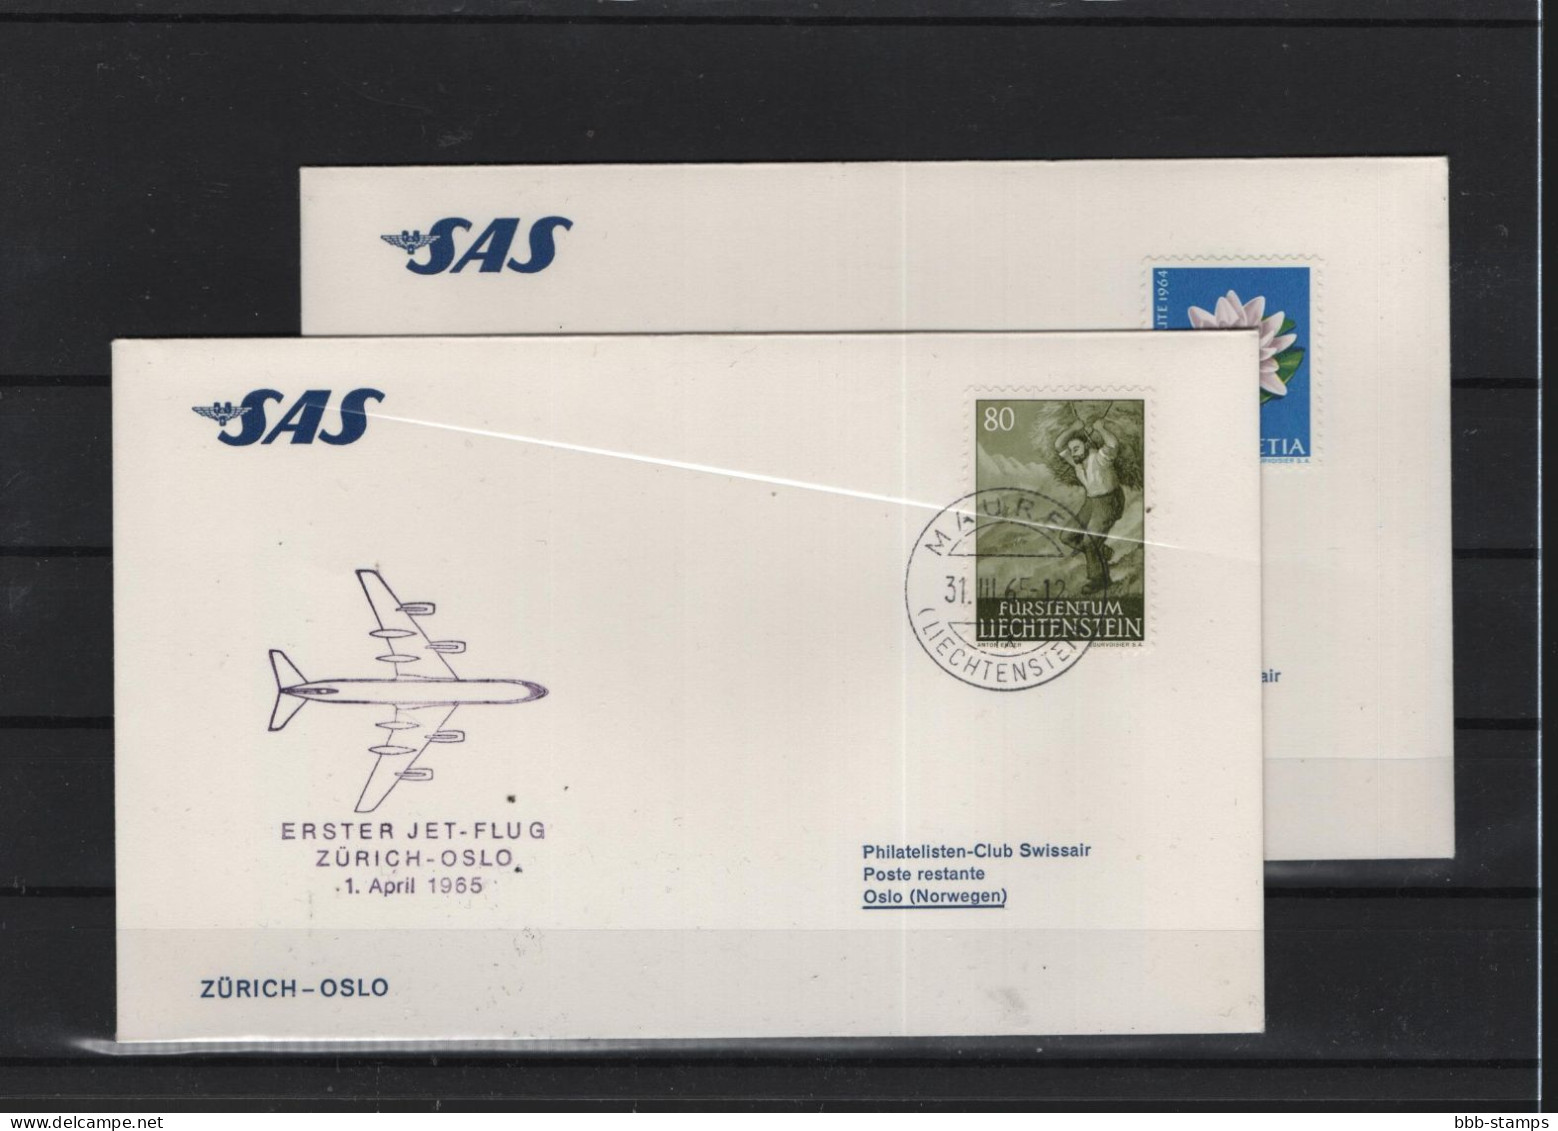 Schweiz Luftpost FFC SAS  1.4.1965 Zürich - Oslo - Primeros Vuelos